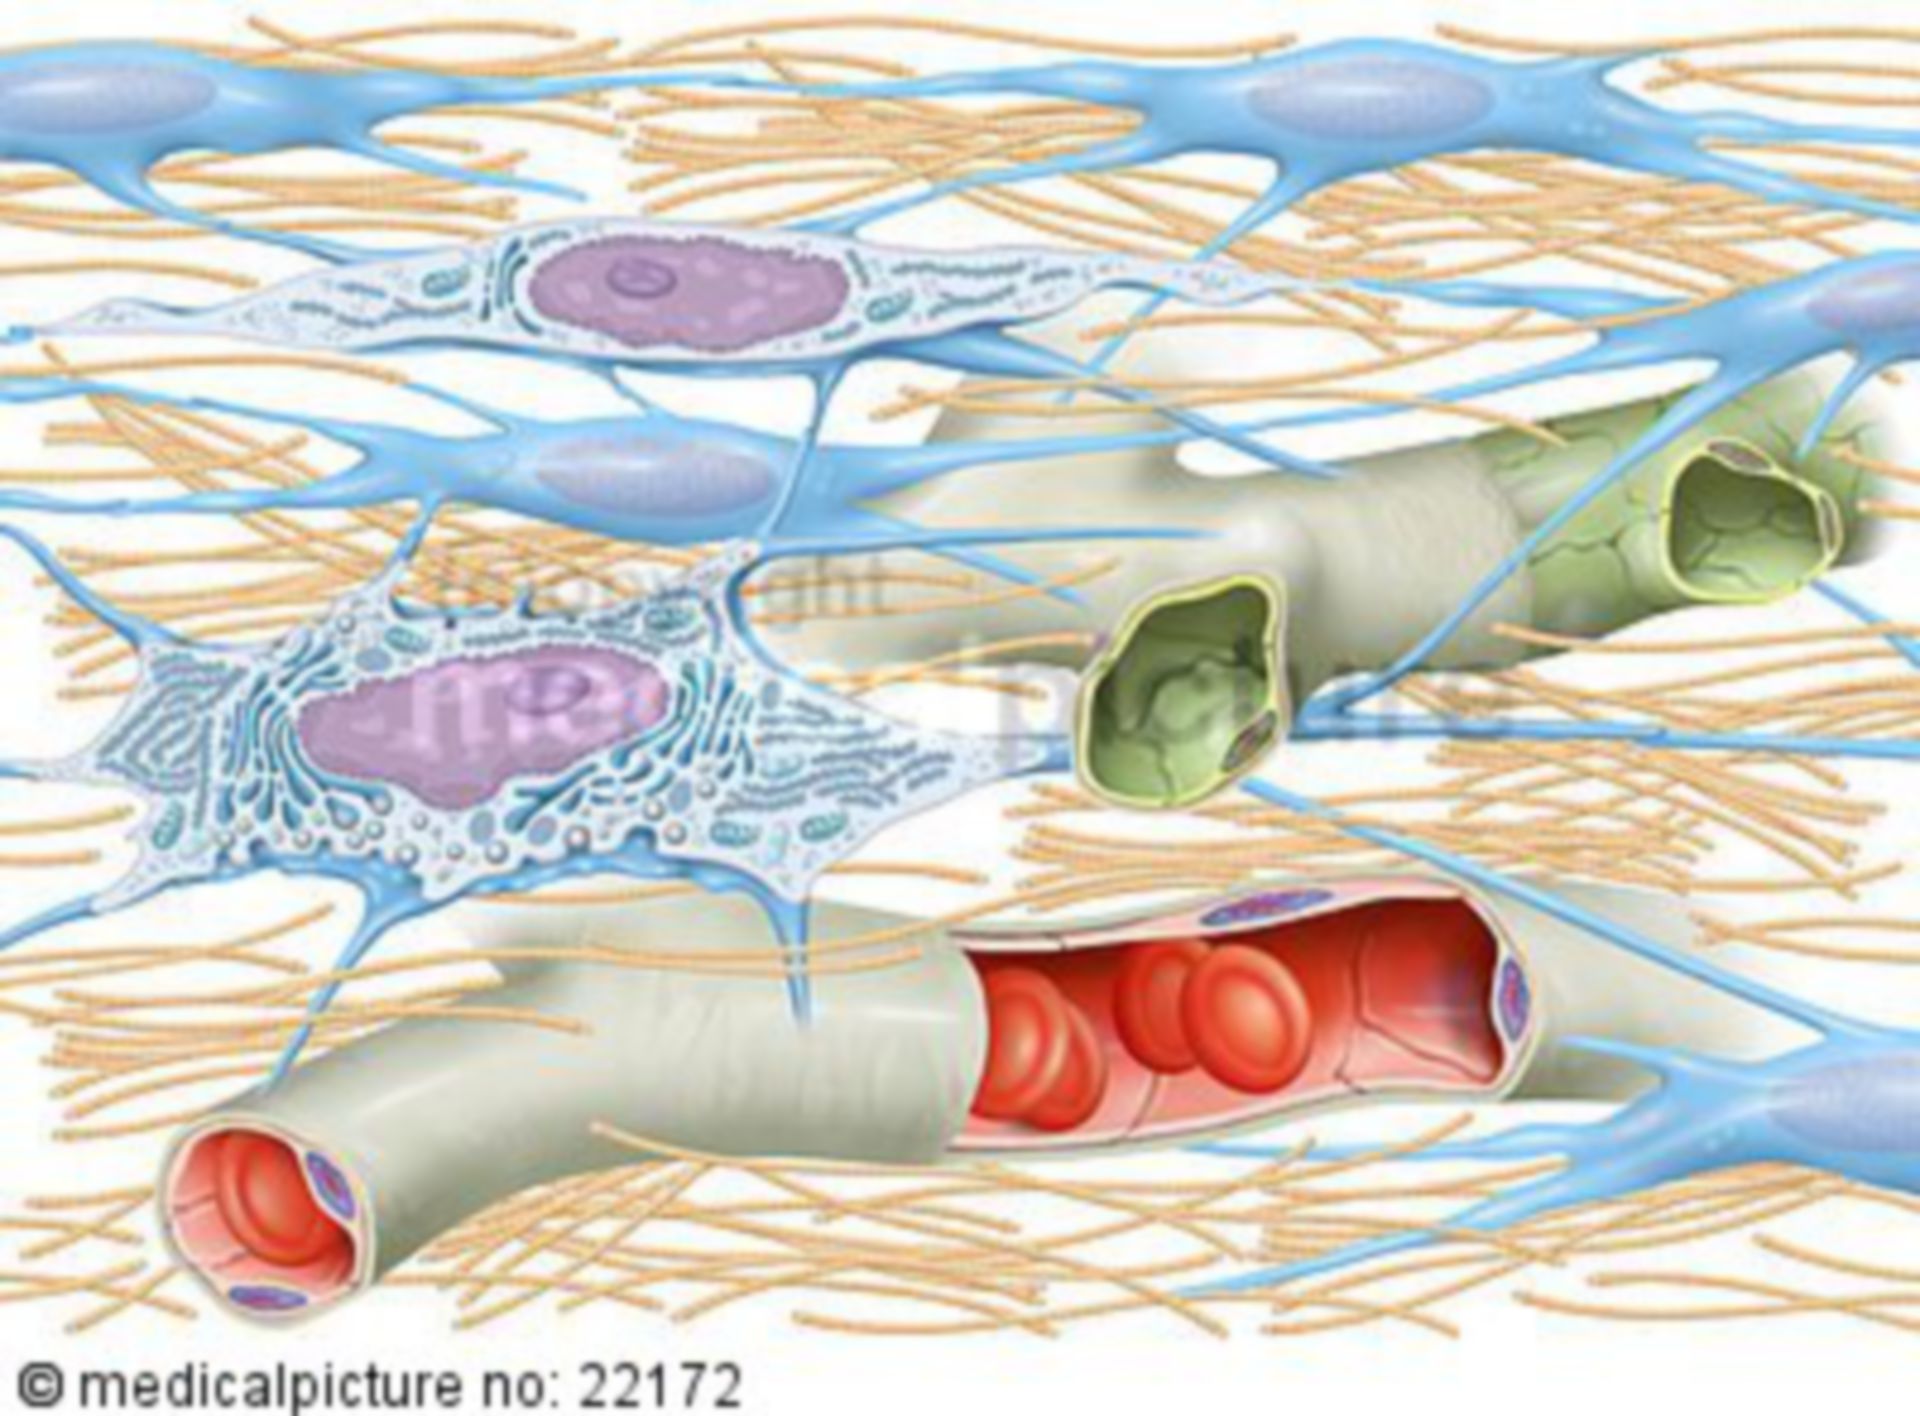  Kollagenfasern im Bindegewebe 
